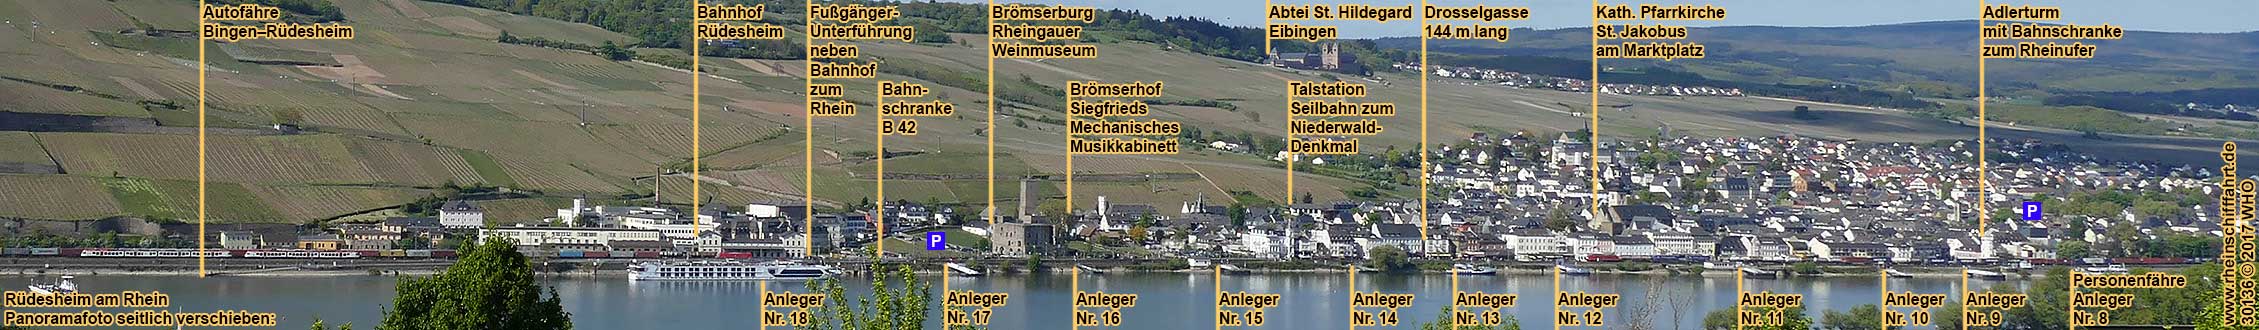 Rdesheim am Rhein. Panoramafoto mit Schiffsanlegern.